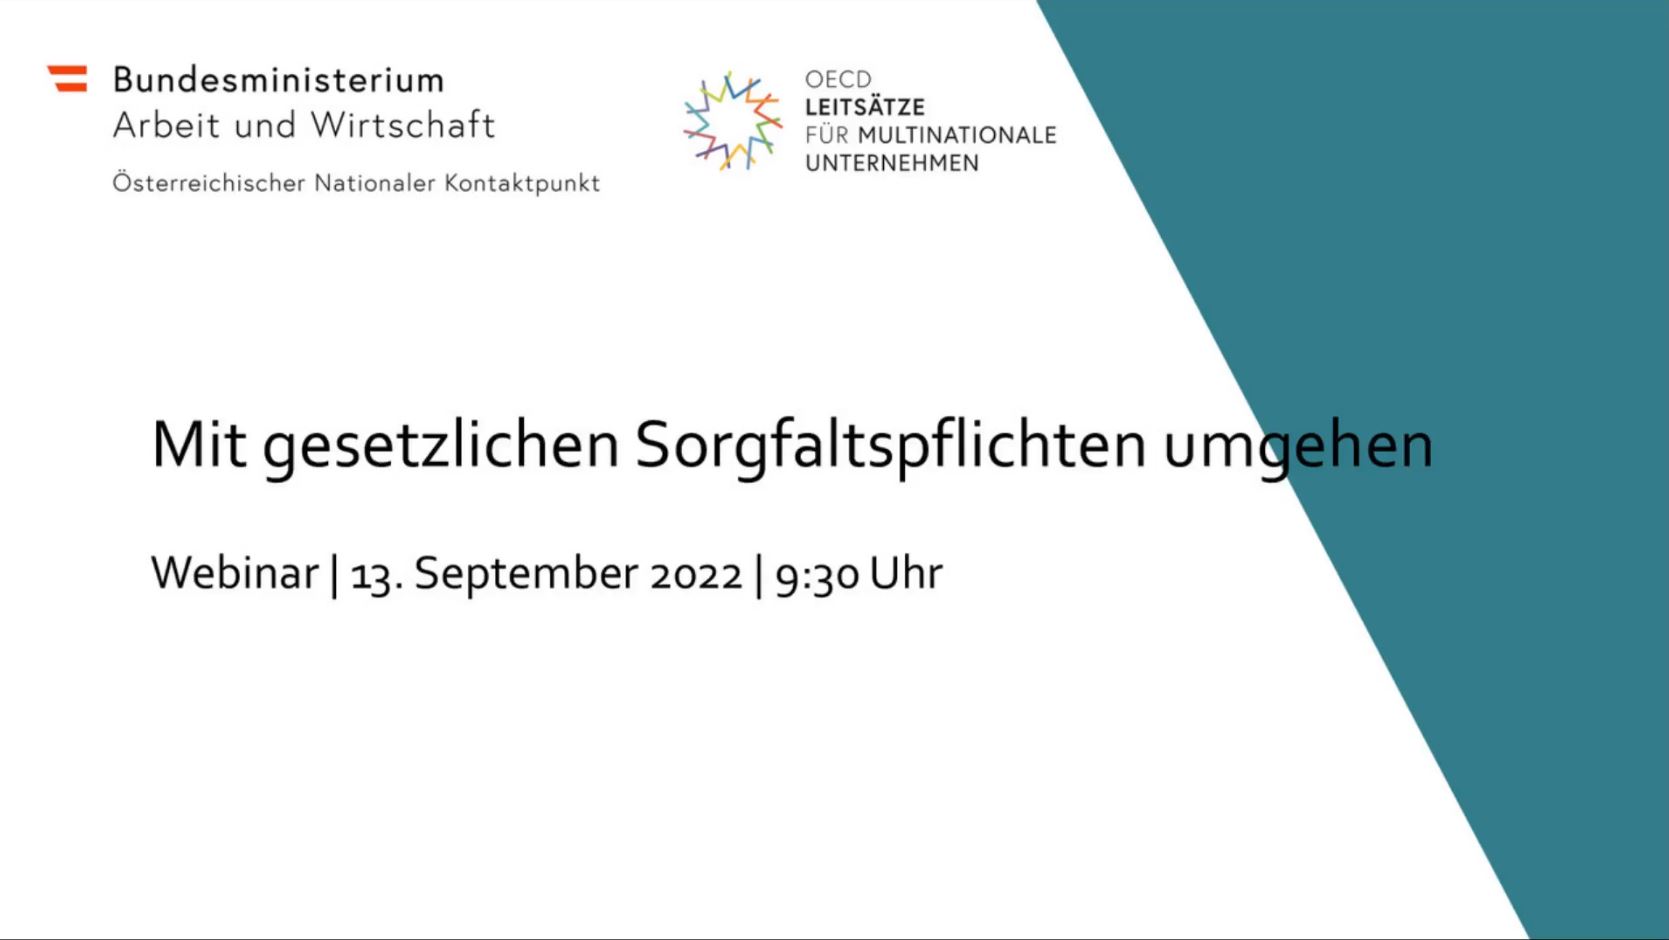 "Mit gesetzlichen Sorgfaltspflichten umgehen" – Webinar vom 13. September 2022